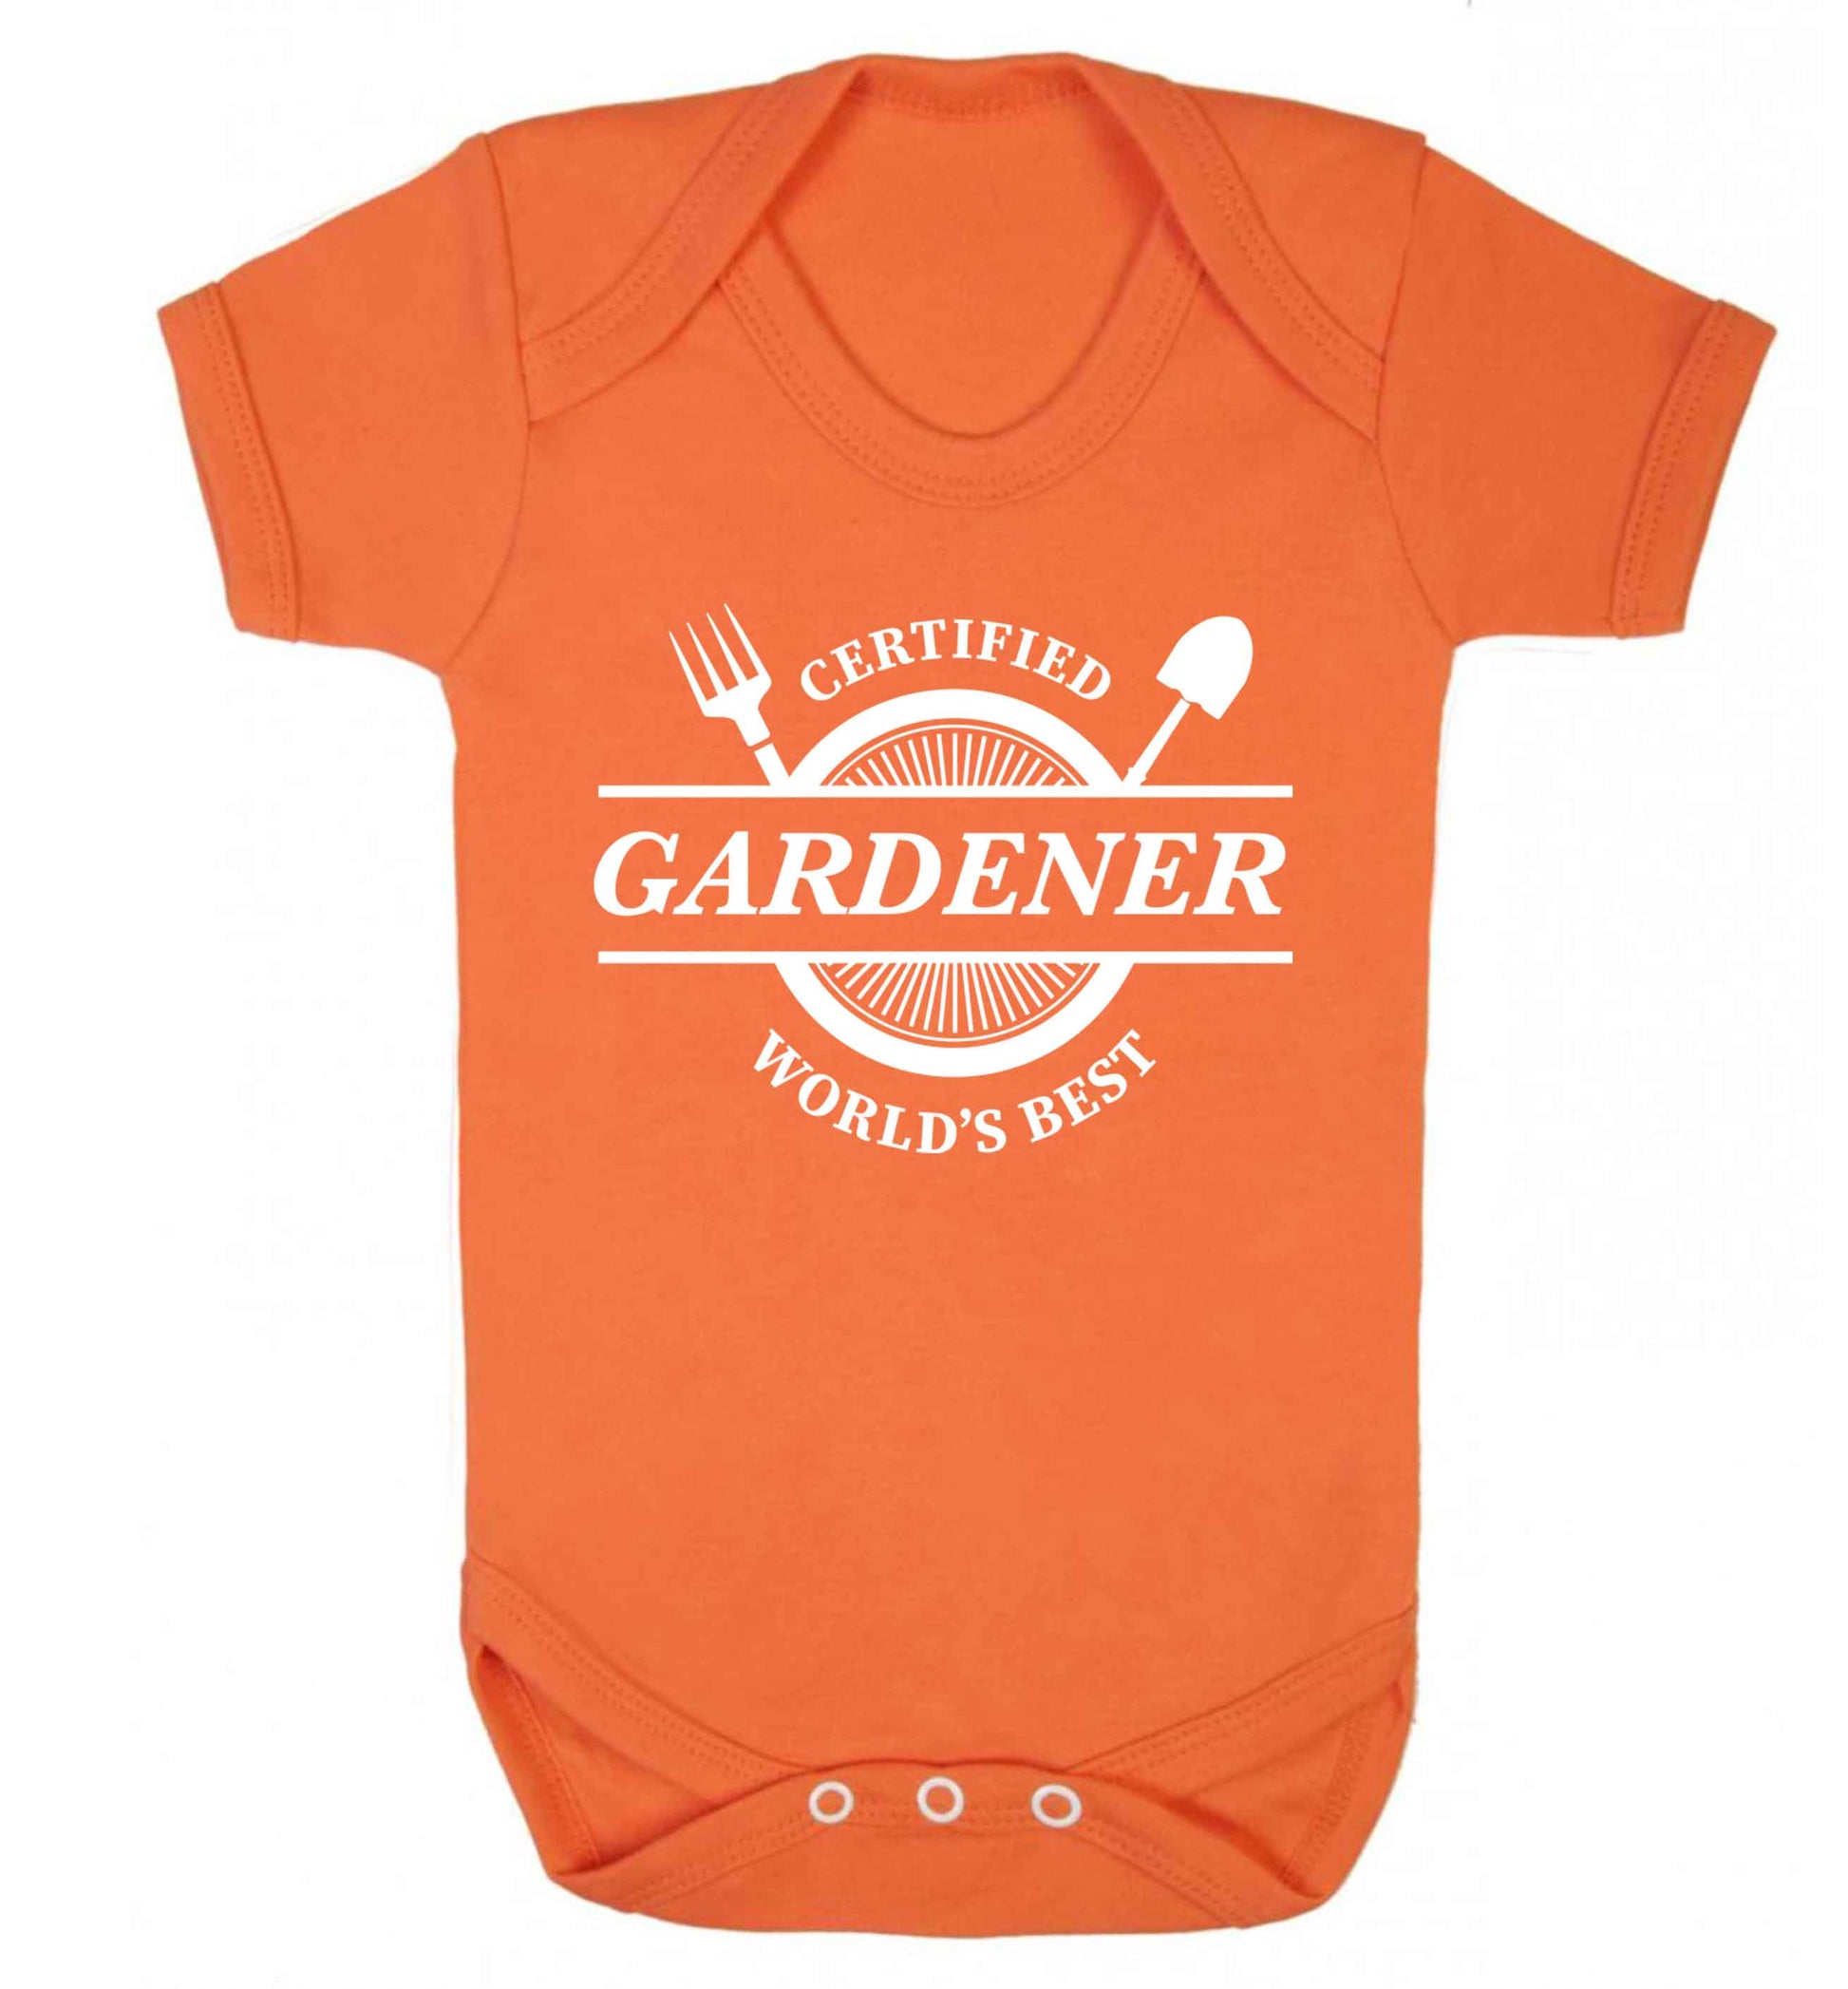 Certified gardener worlds best Baby Vest orange 18-24 months